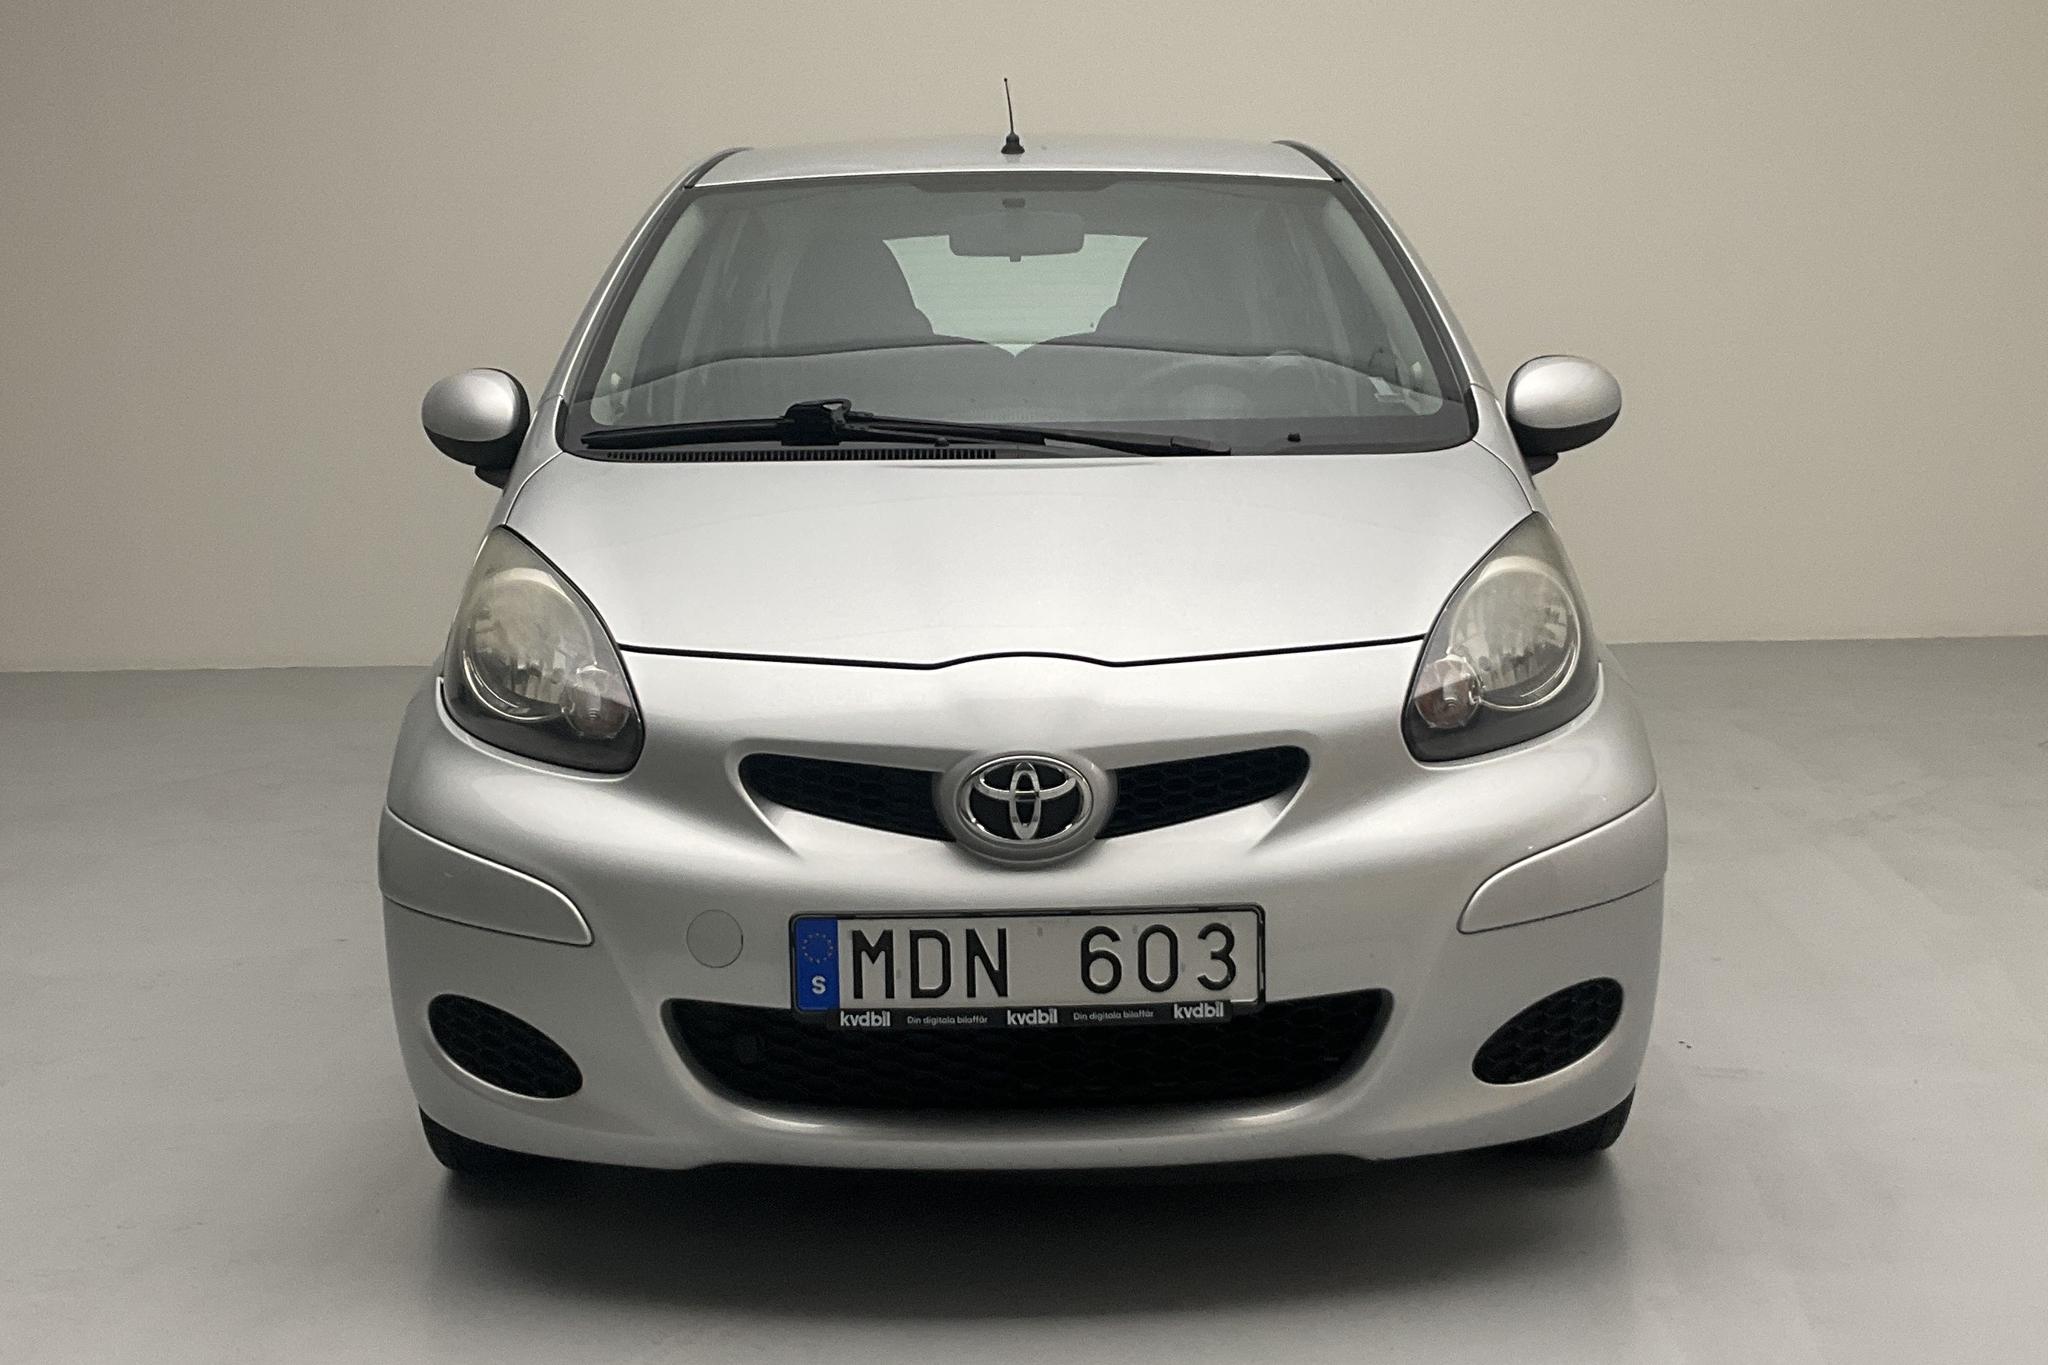 Toyota Aygo 1.0 VVT-i 5dr (68hk) - 113 410 km - Manual - silver - 2012